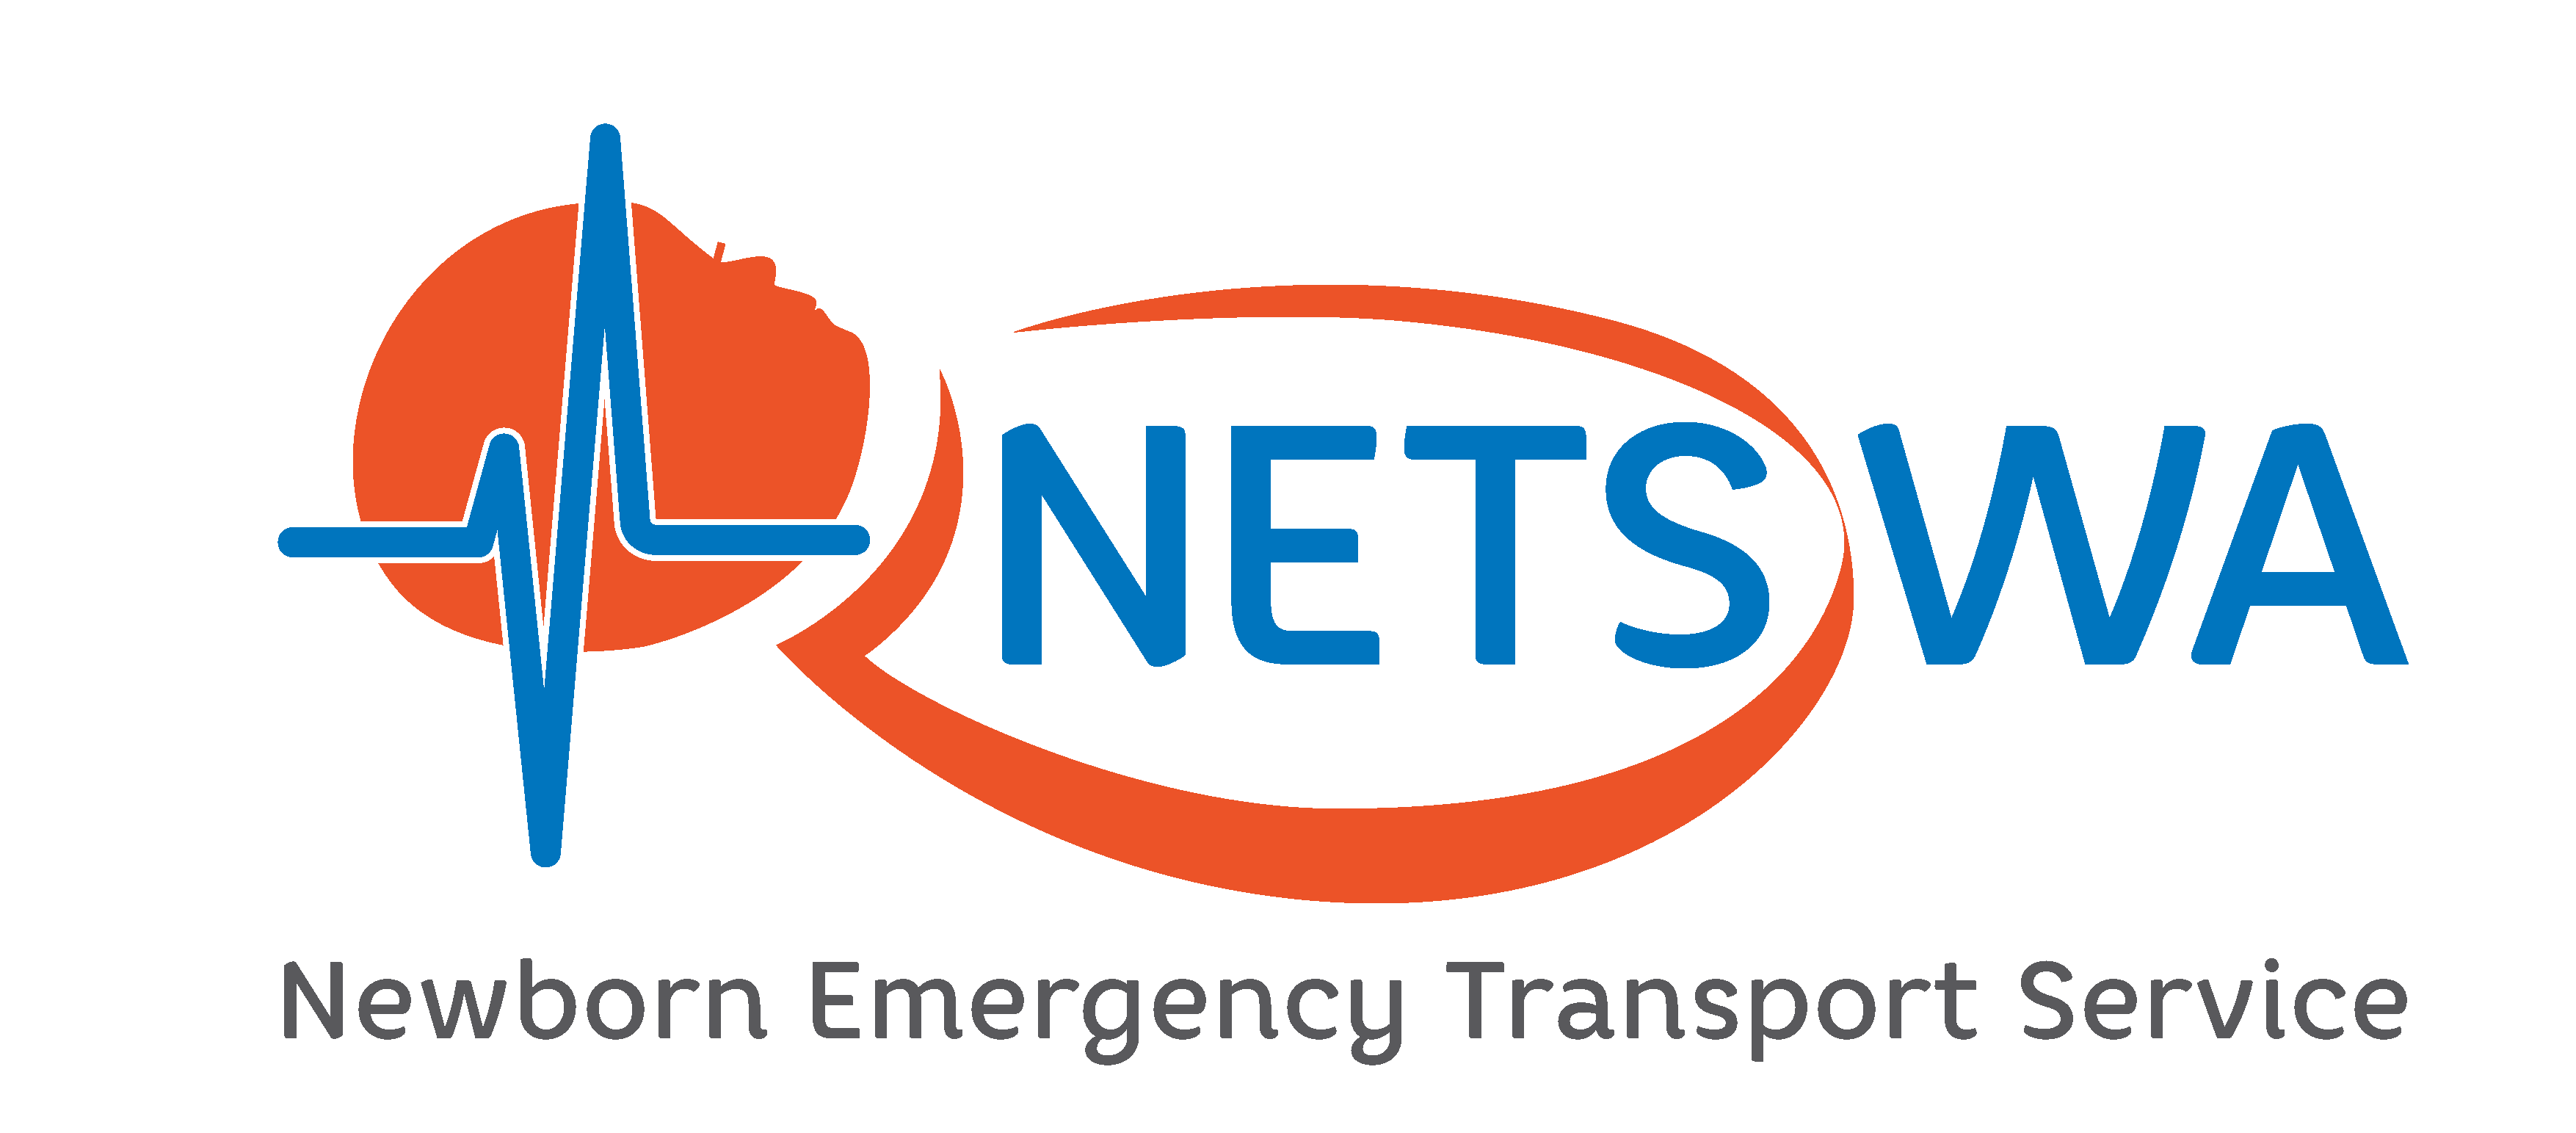 NETS WA logo